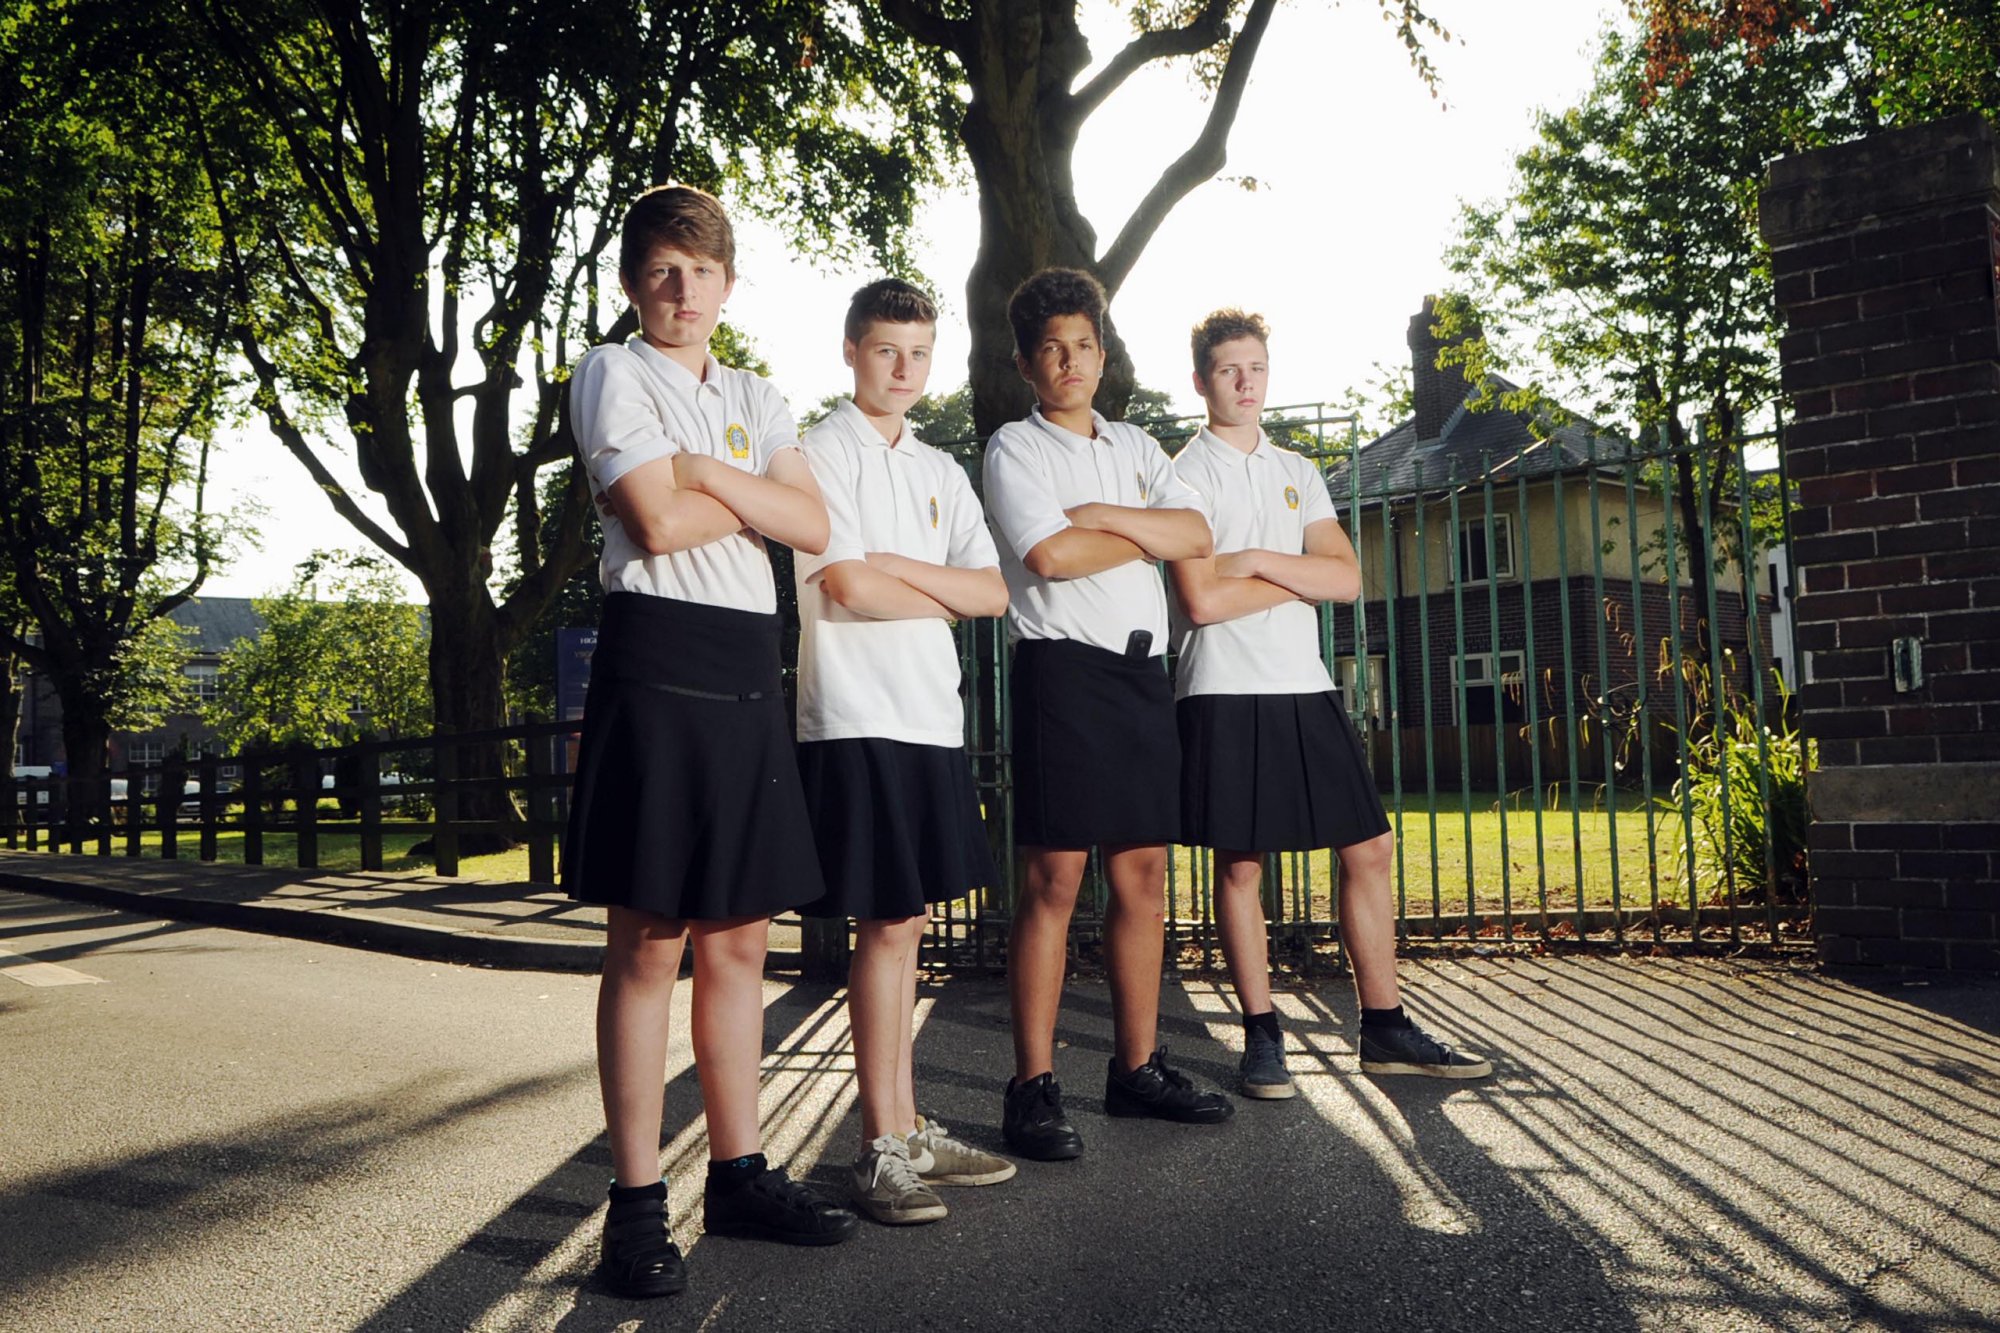 Мальчики в юбках: английские школьники смогут носить гендерно-нейтральную форму